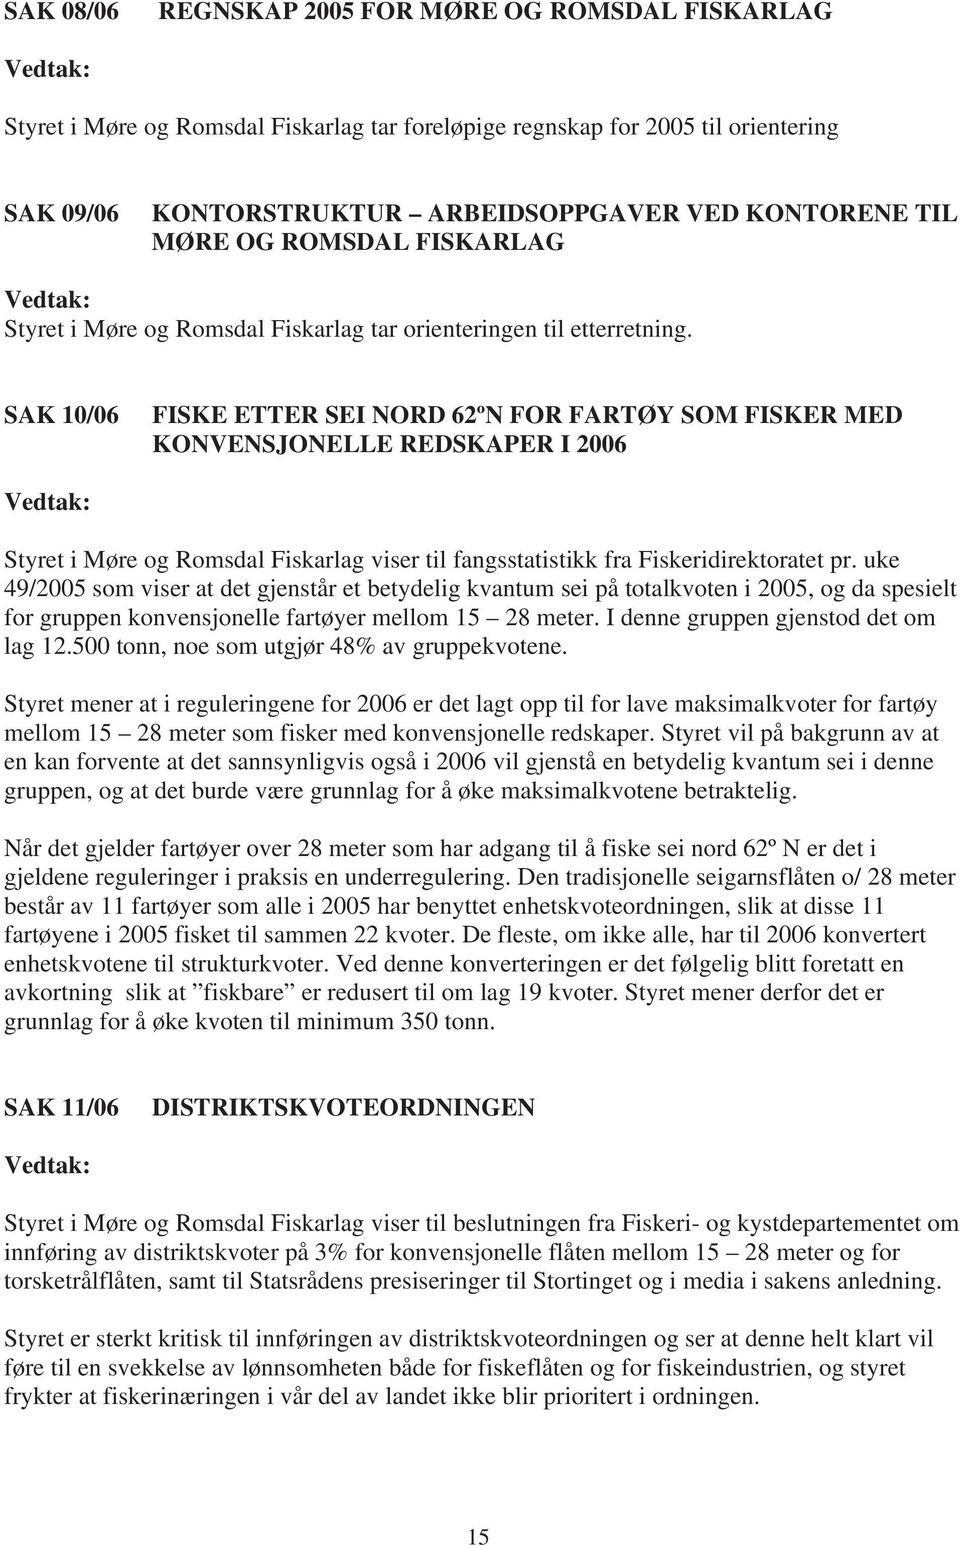 SAK 10/06 FISKE ETTER SEI NORD 62ºN FOR FARTØY SOM FISKER MED KONVENSJONELLE REDSKAPER I 2006 Styret i Møre og Romsdal Fiskarlag viser til fangsstatistikk fra Fiskeridirektoratet pr.